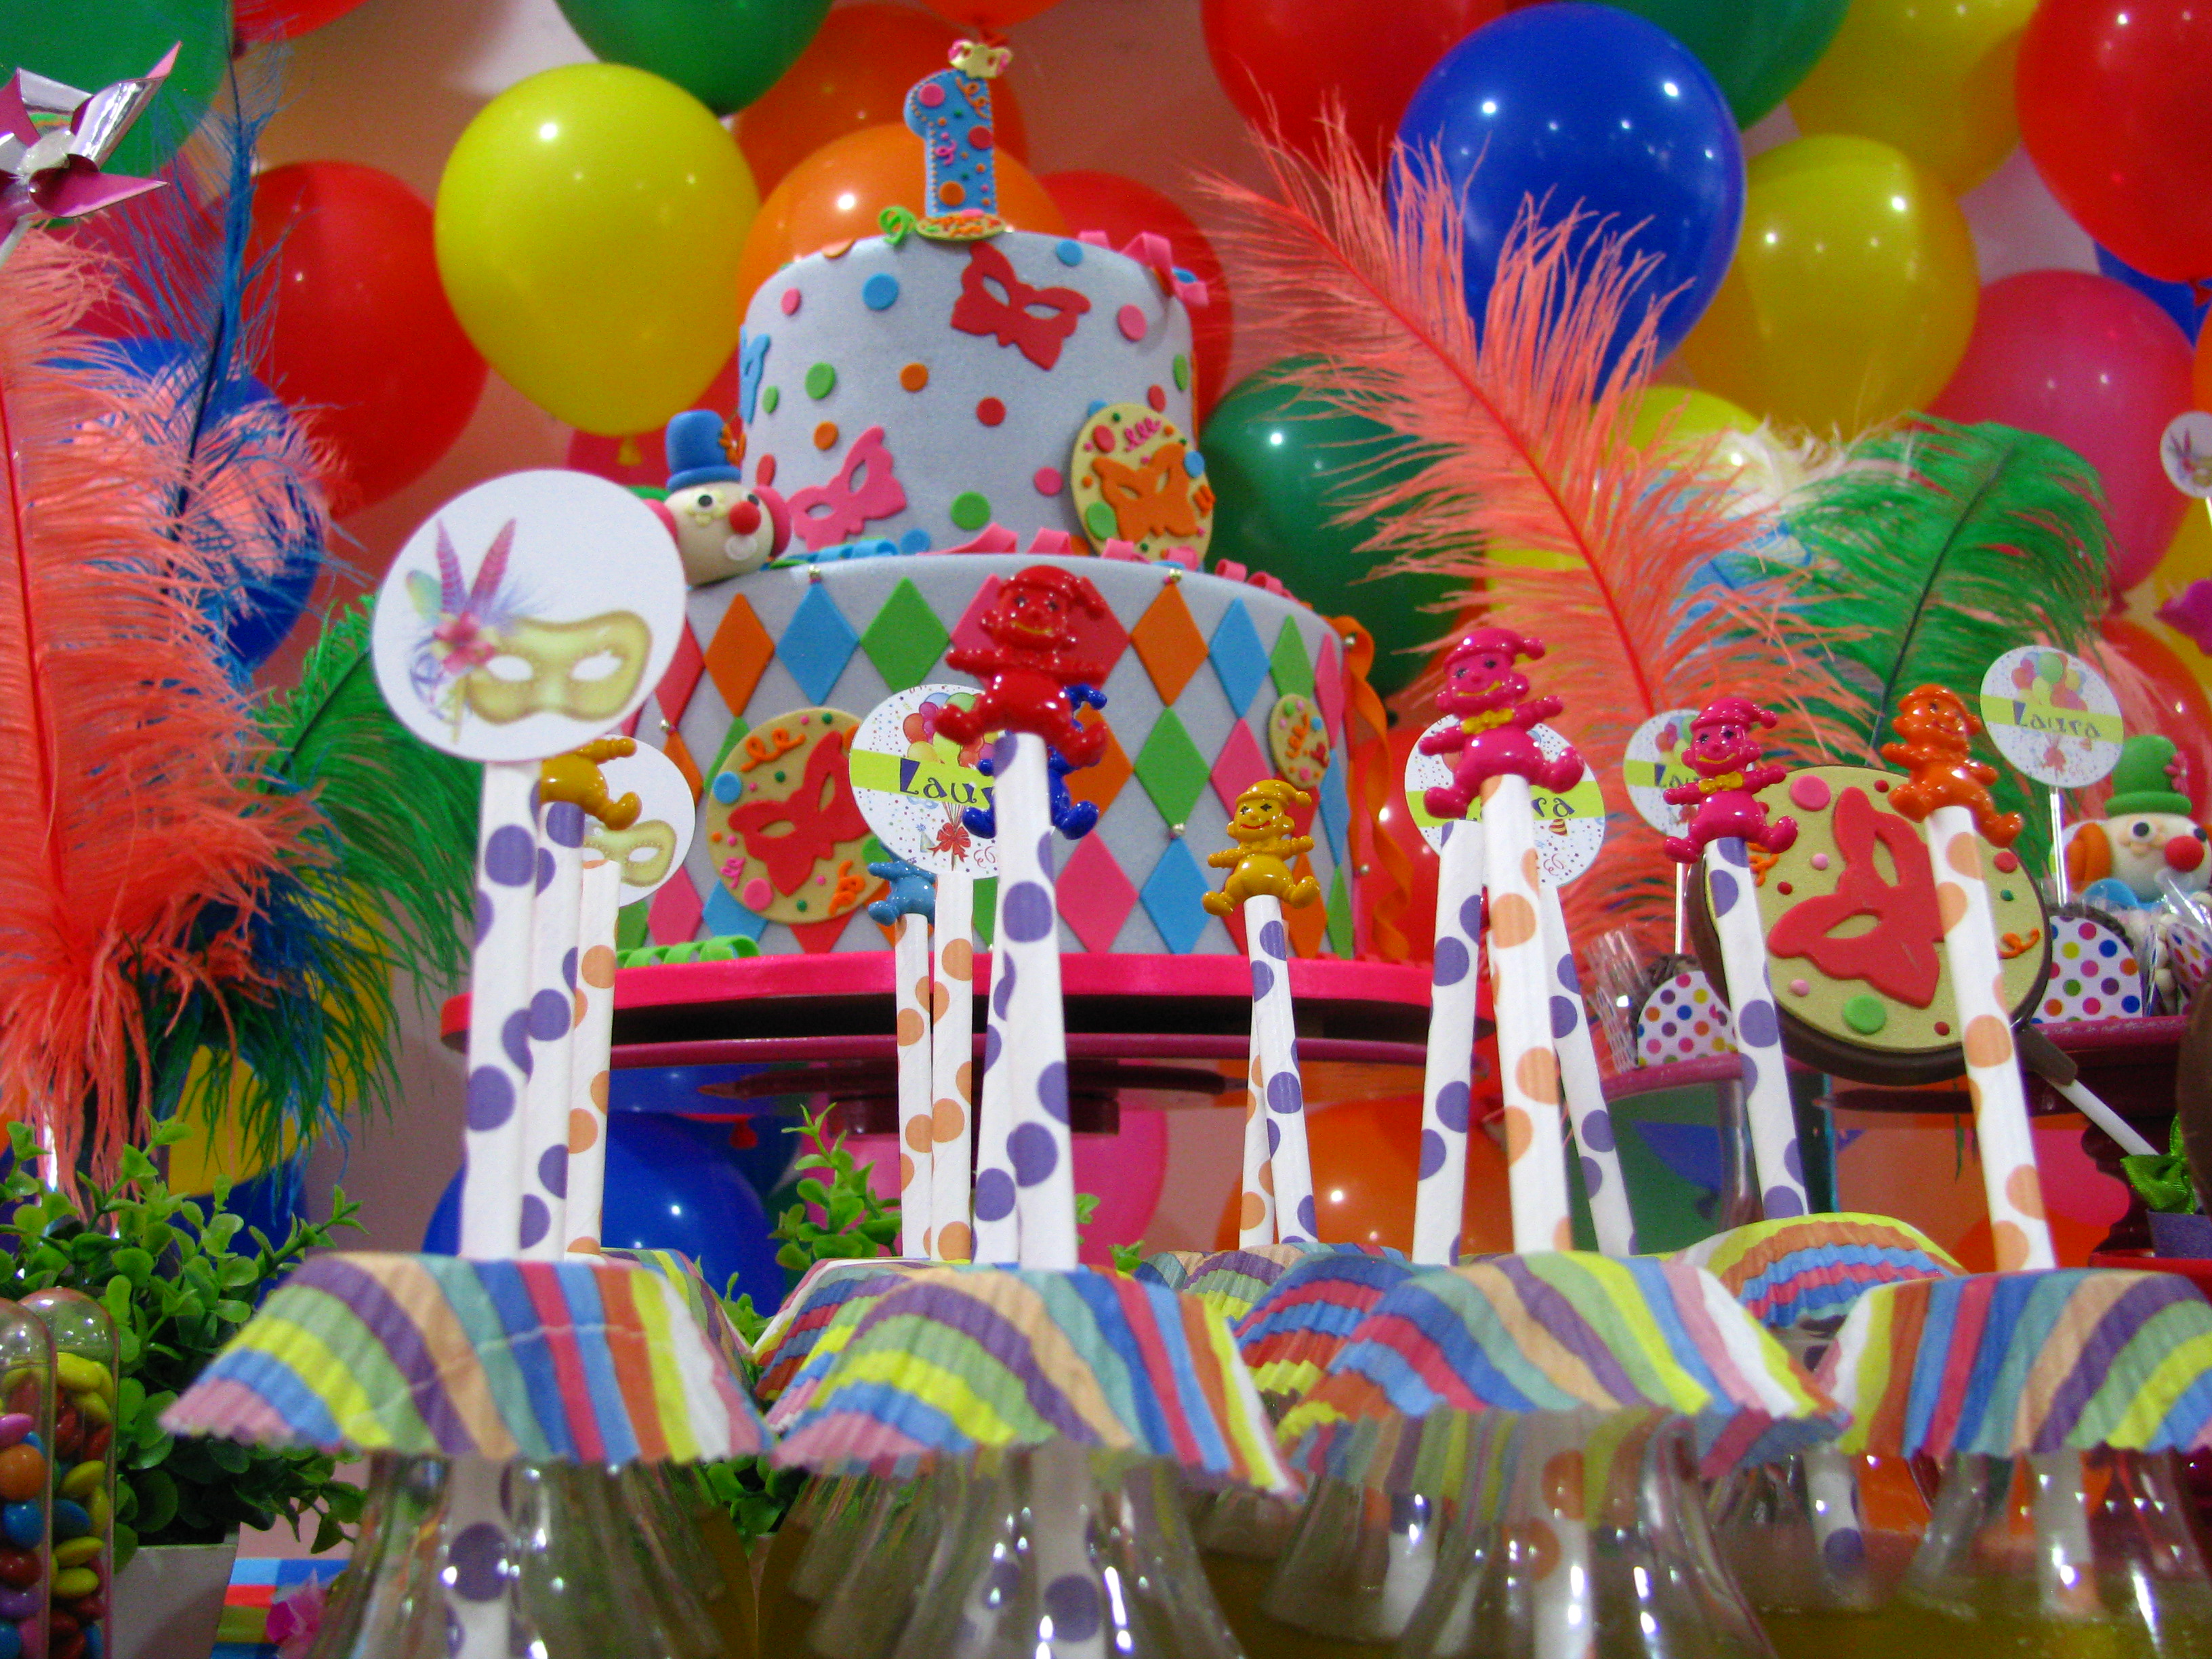 Mesa de guloseimas com tema carnaval.